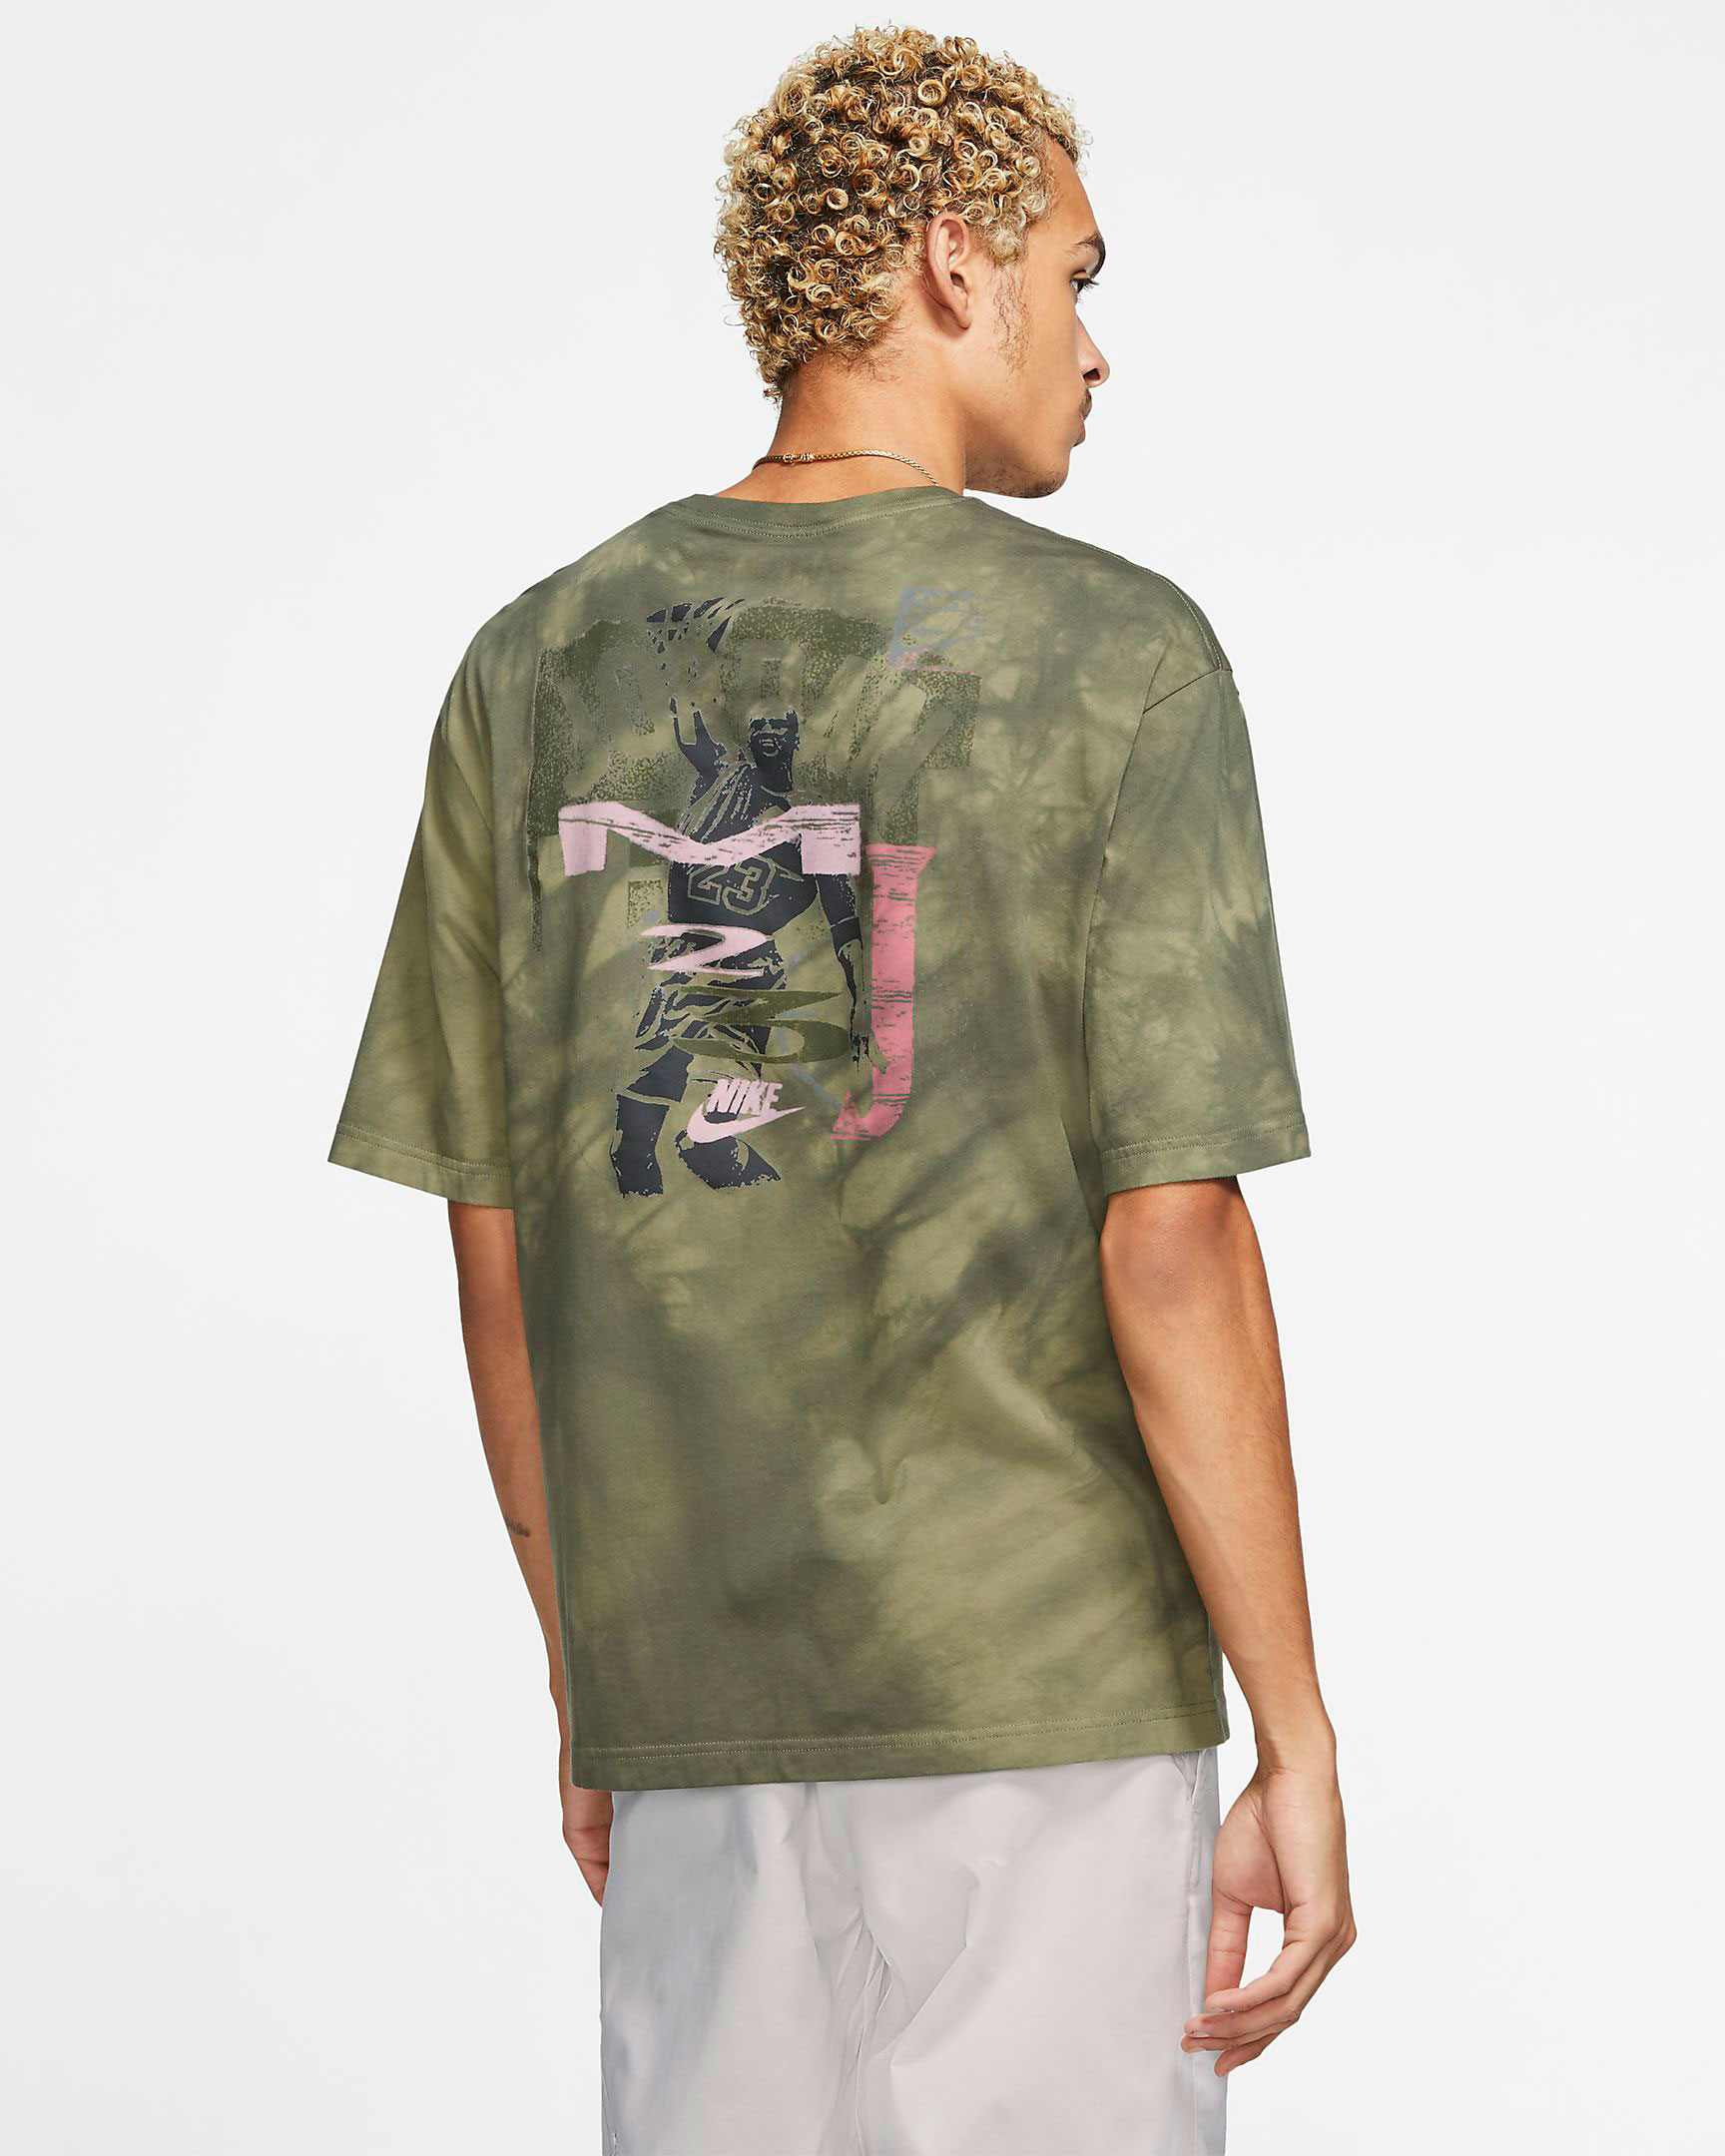 jordan-remastered-vintage-shirt-green-pink-2